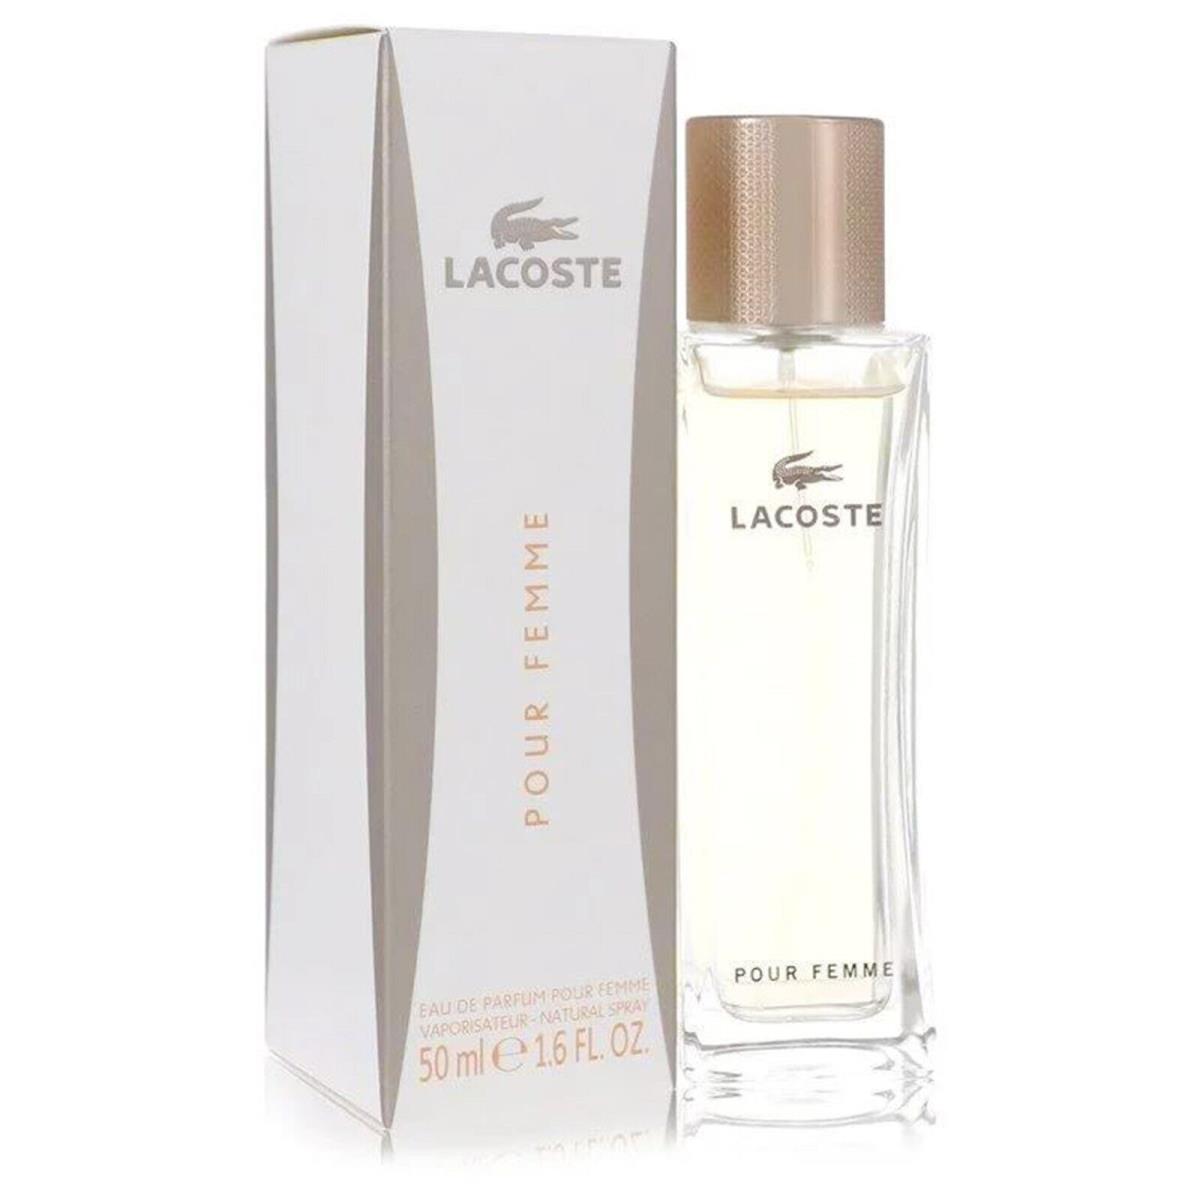 Lacoste Pour Femme Perfume by Lacoste Women Fragrance Eau De Parfum Spray 1.6 oz